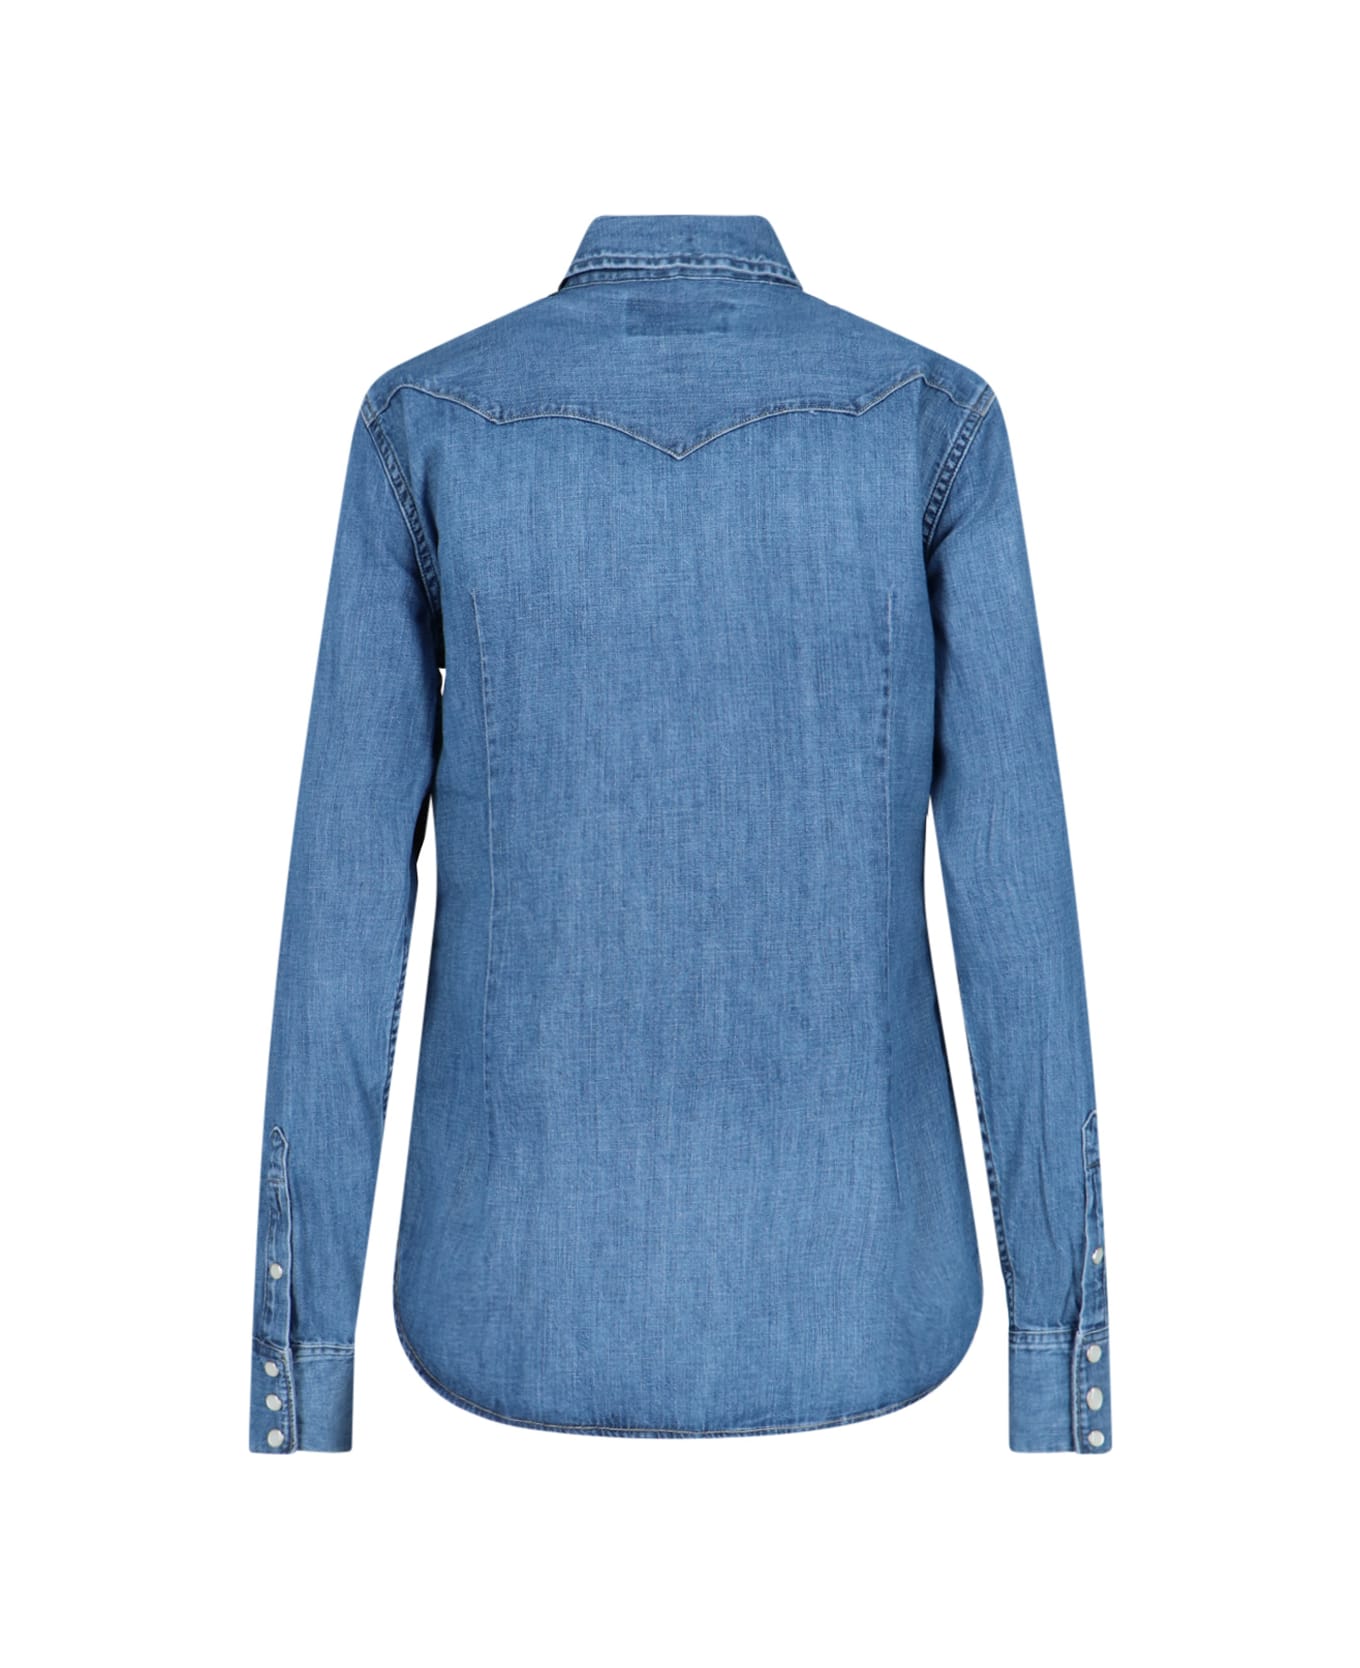 Polo Ralph Lauren Denim Shirt - blue シャツ